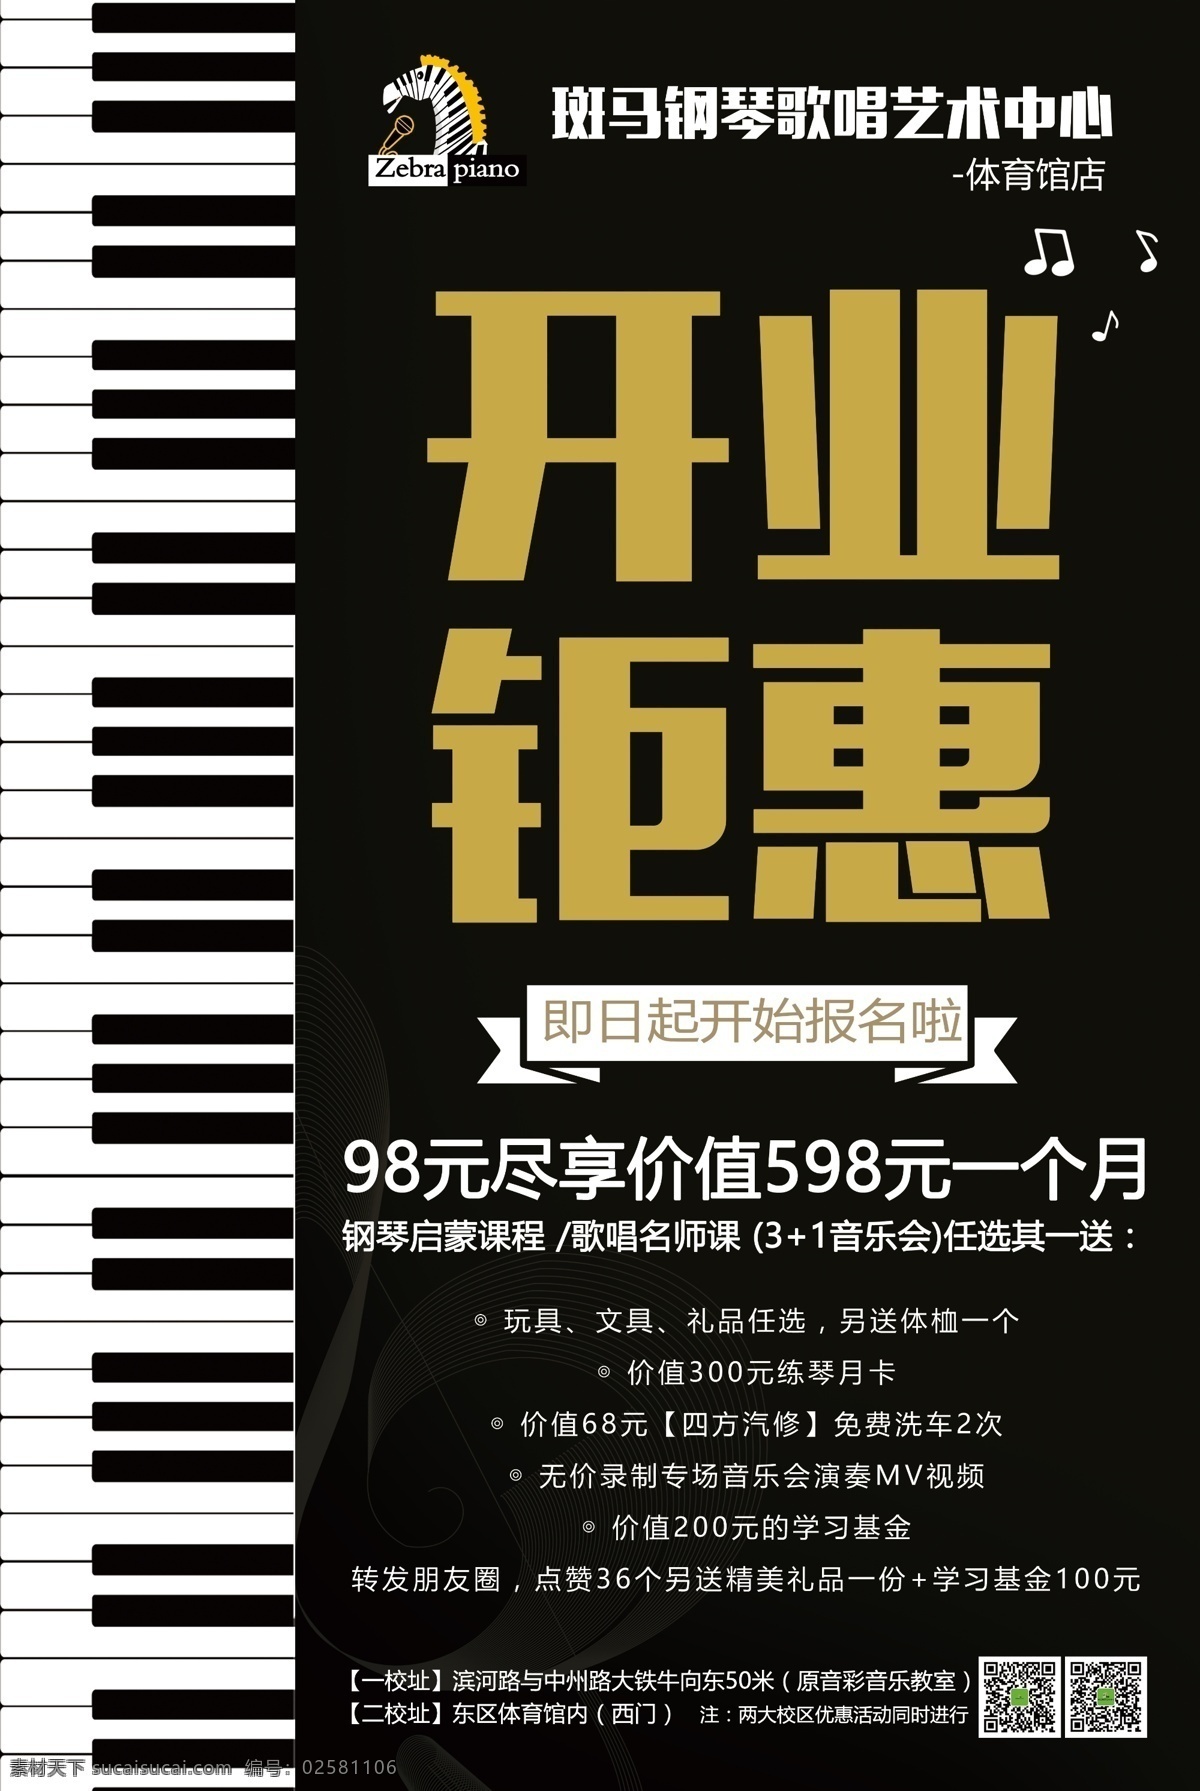 开业钜惠 钢琴开业海报 钢琴开业展架 钢琴钜惠 钢琴活动海报